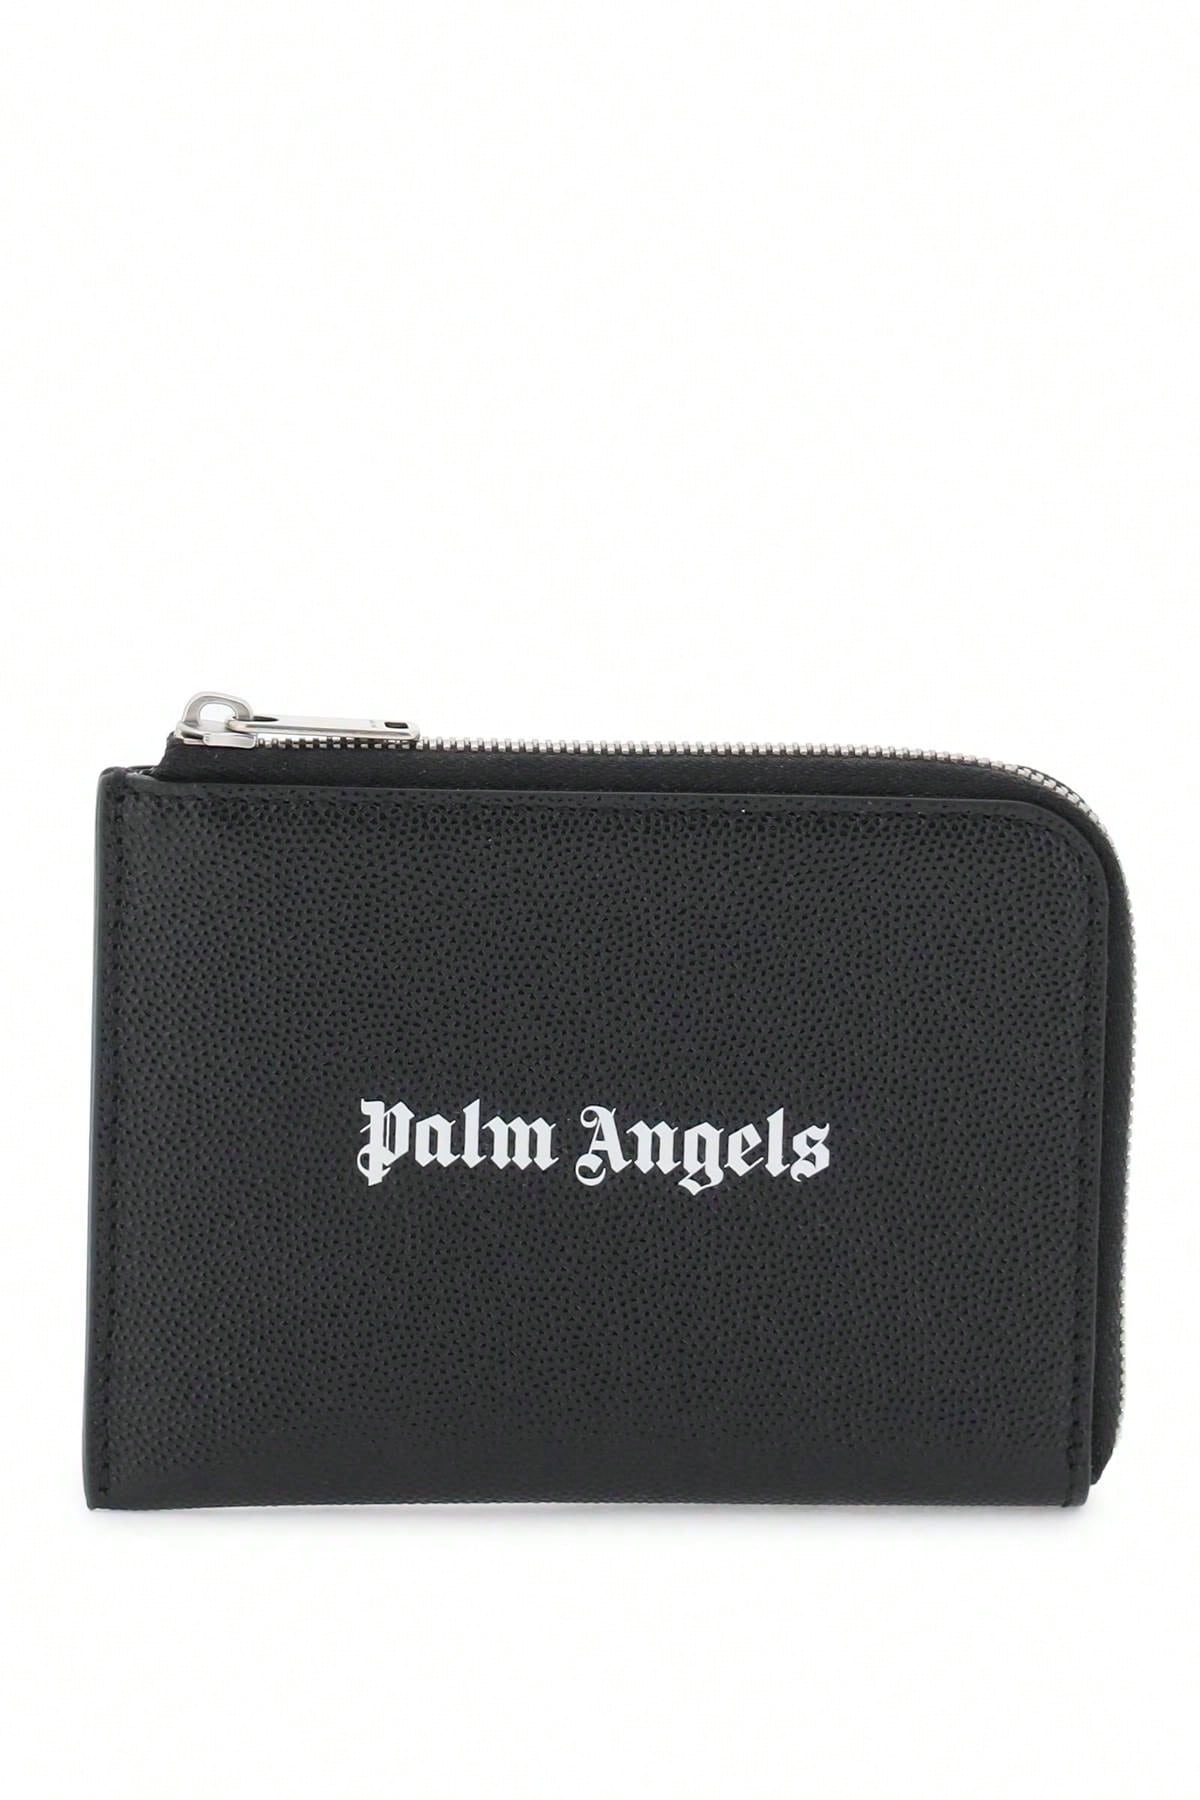 Palm Angels Миниатюрная сумка Palm Angels с выдвижным картхолдером, черный